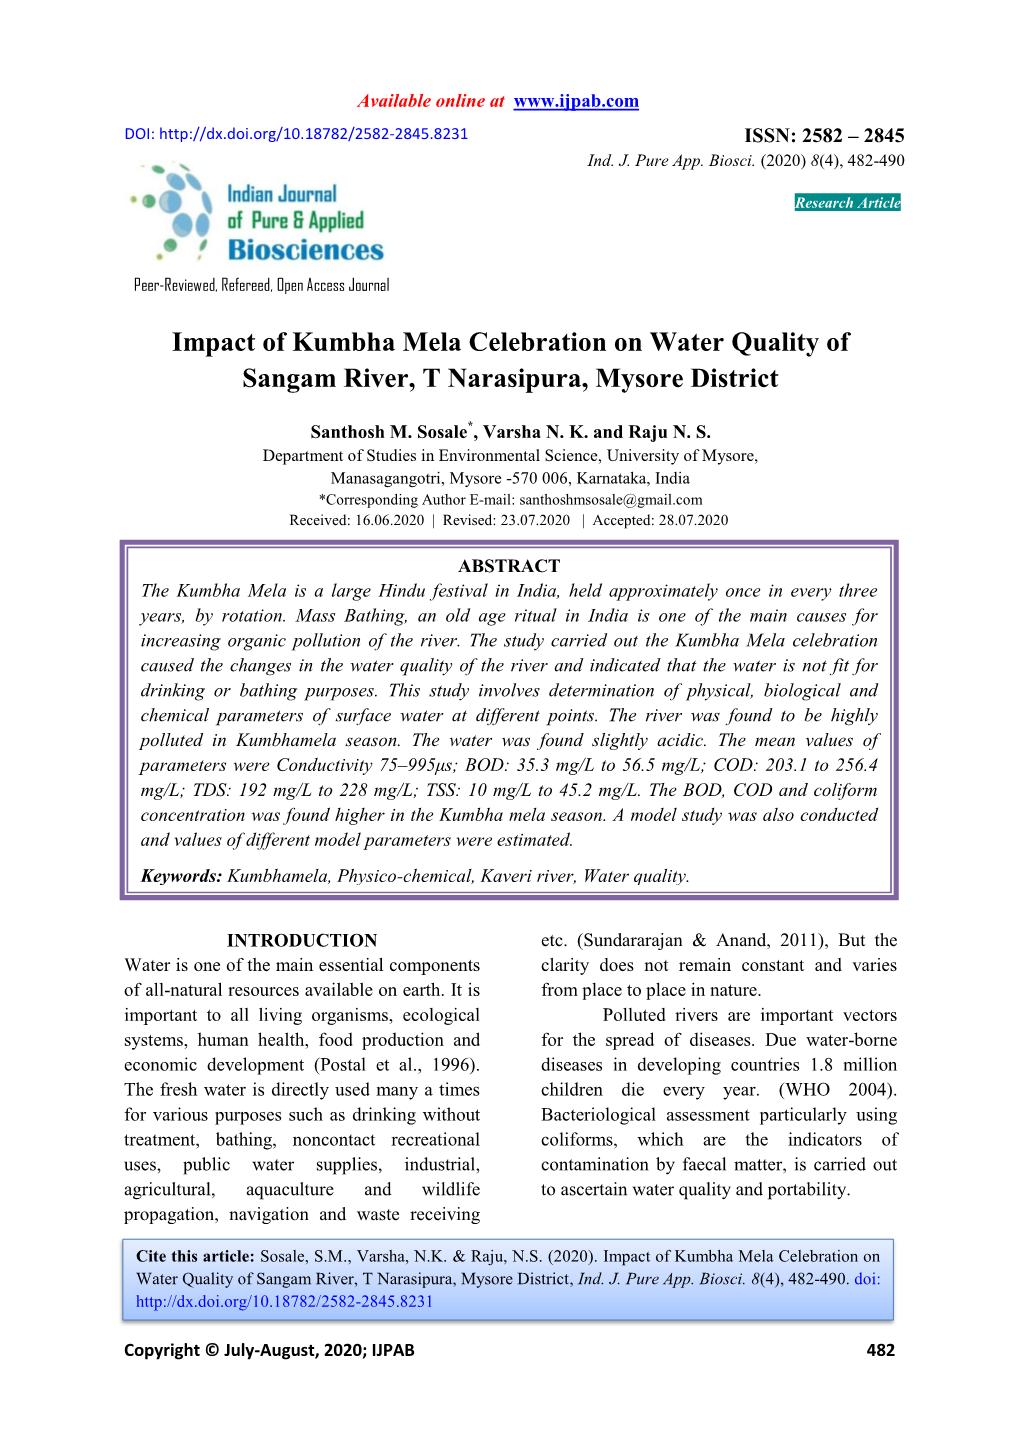 Impact of Kumbha Mela Celebration on Water Quality of Sangam River, T Narasipura, Mysore District